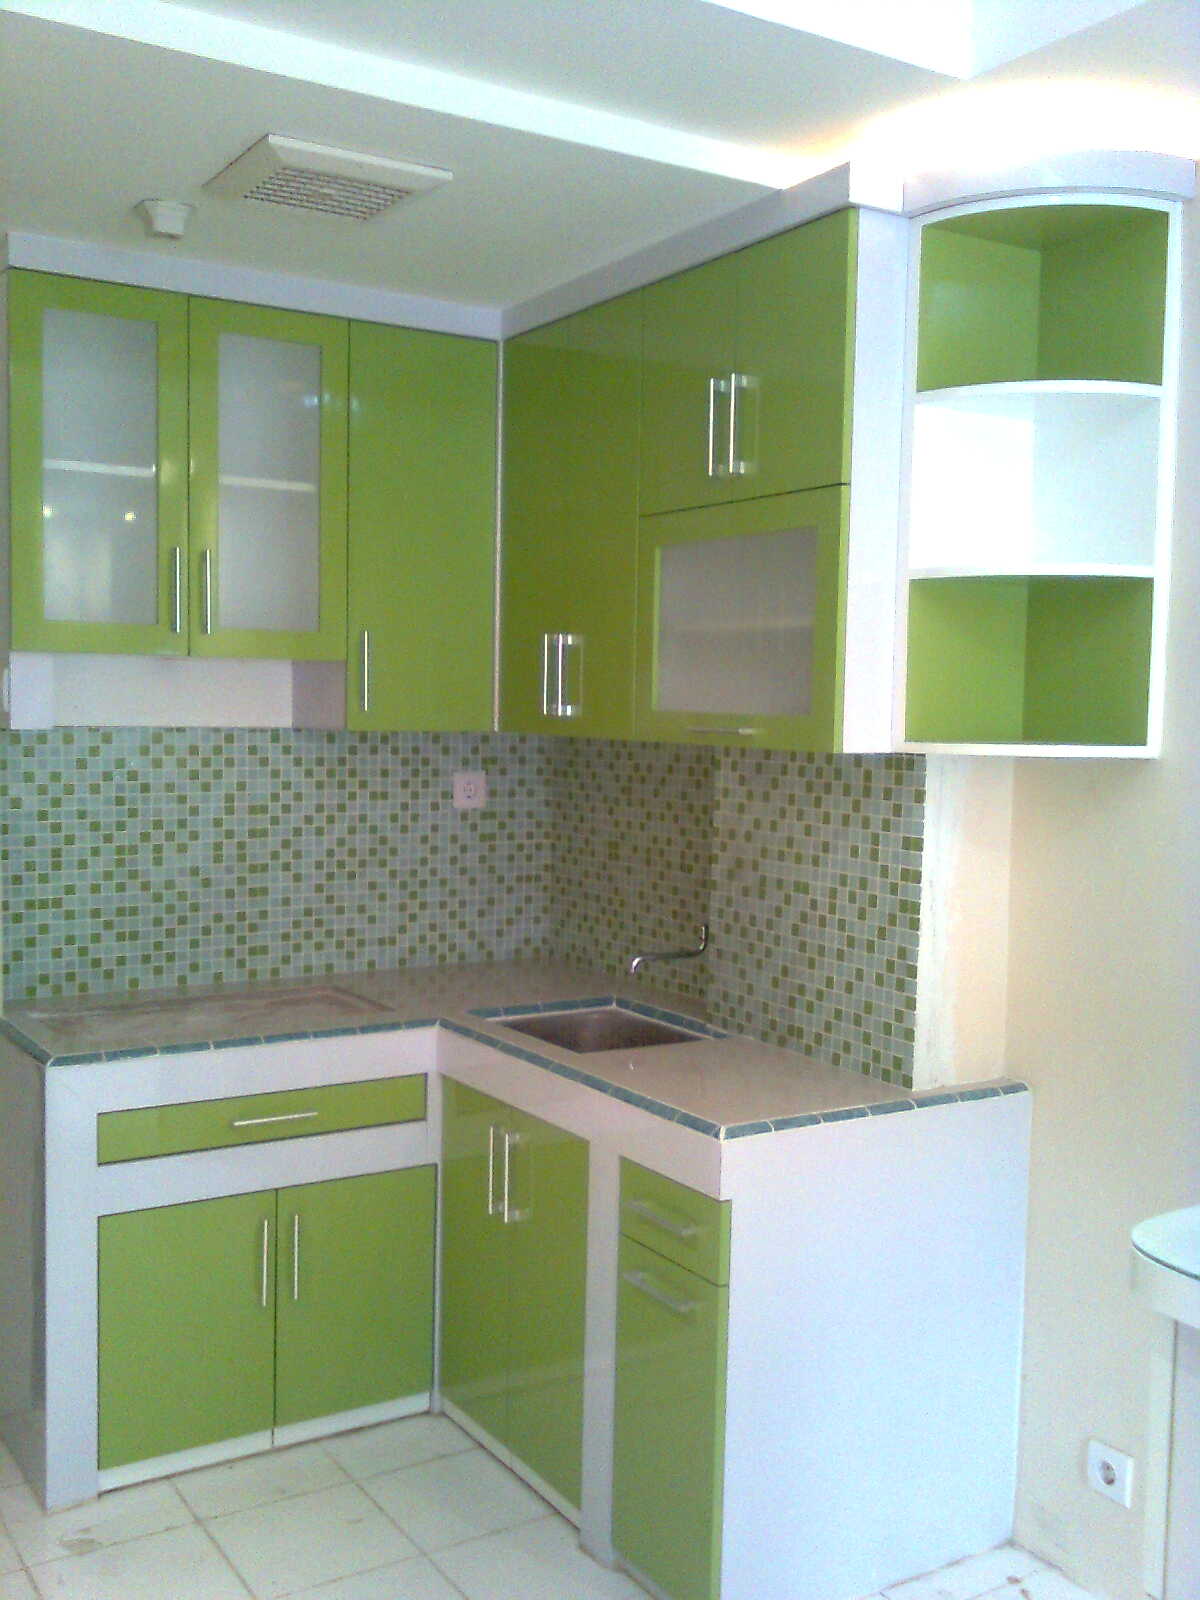 Kitchen set marvel interior design for Siti di interior design